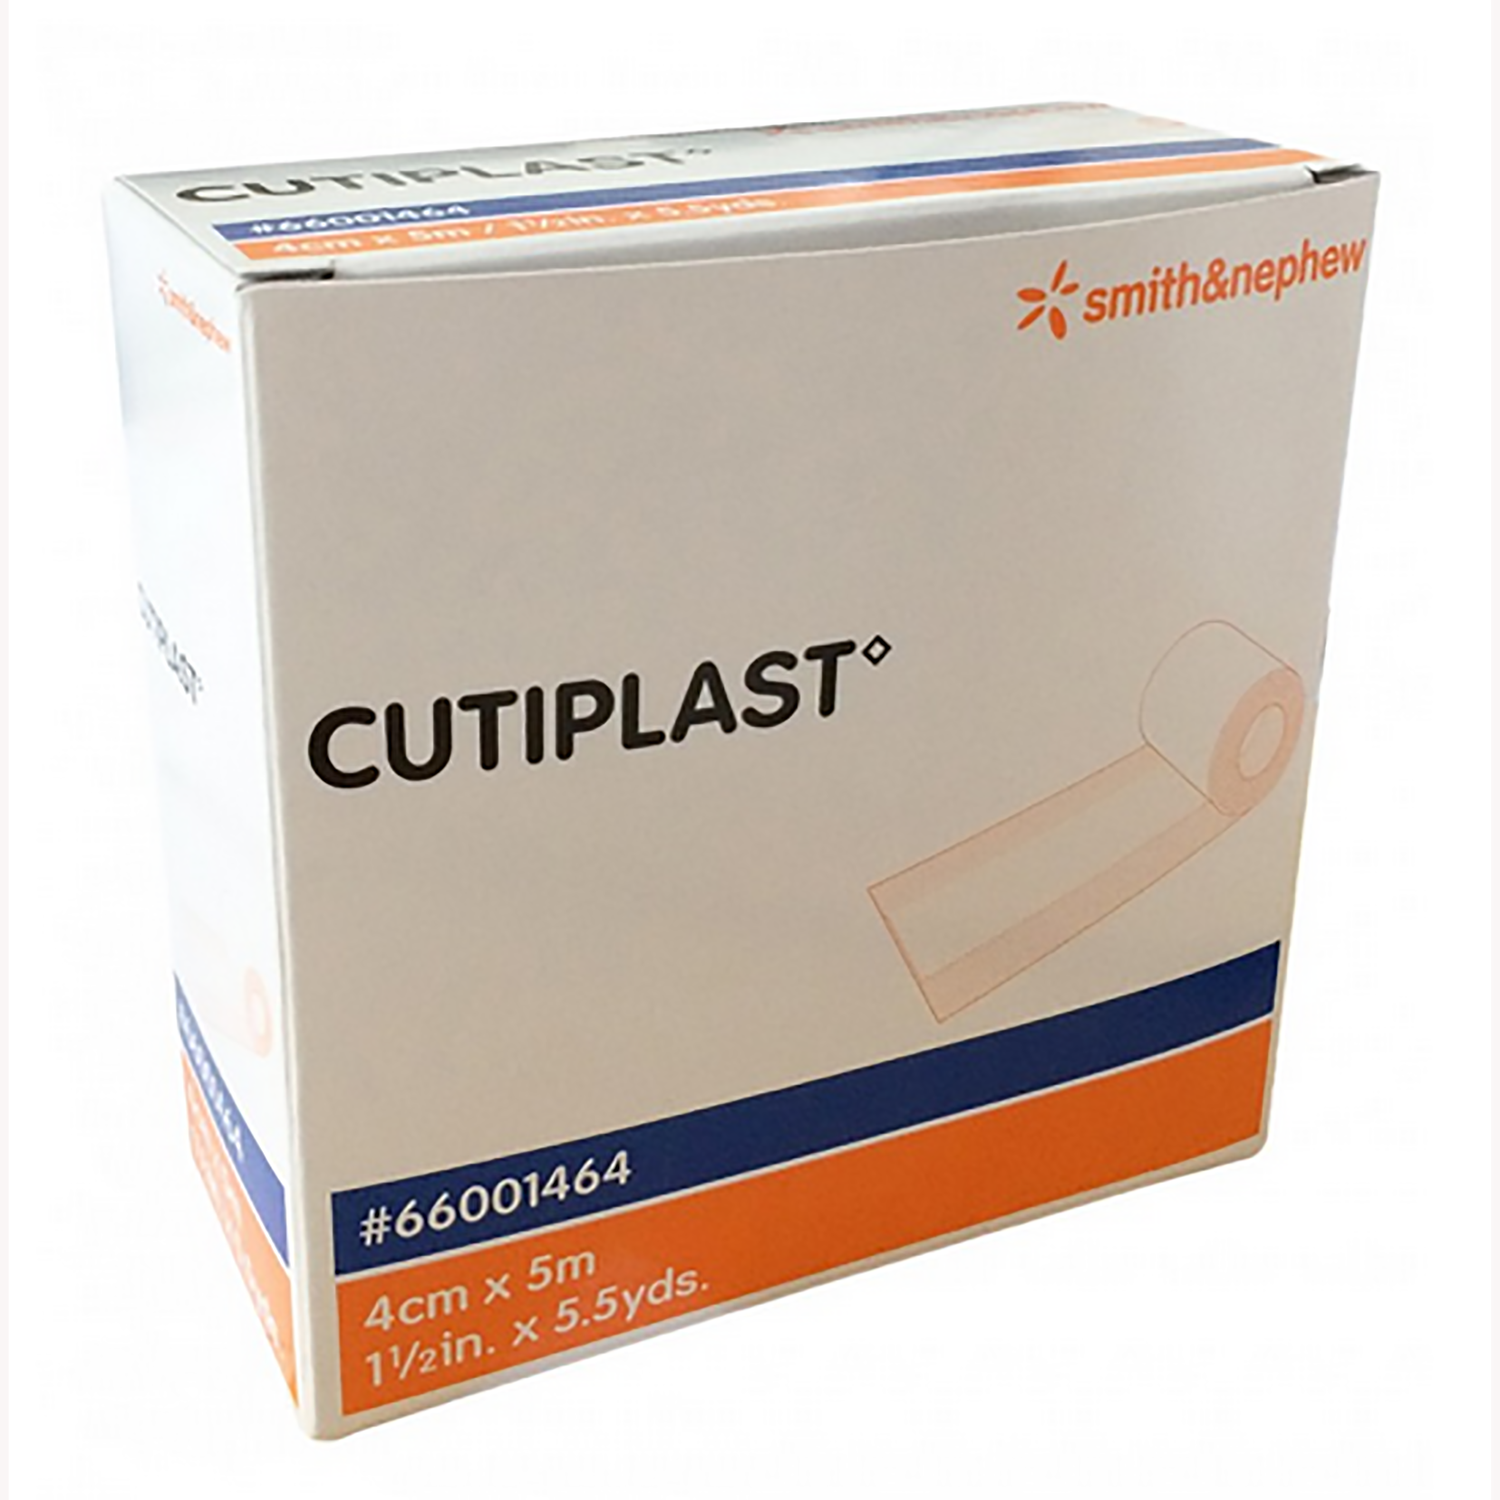 Cutiplast Post-Operative Dressing | 4cm x 5m | Single Roll